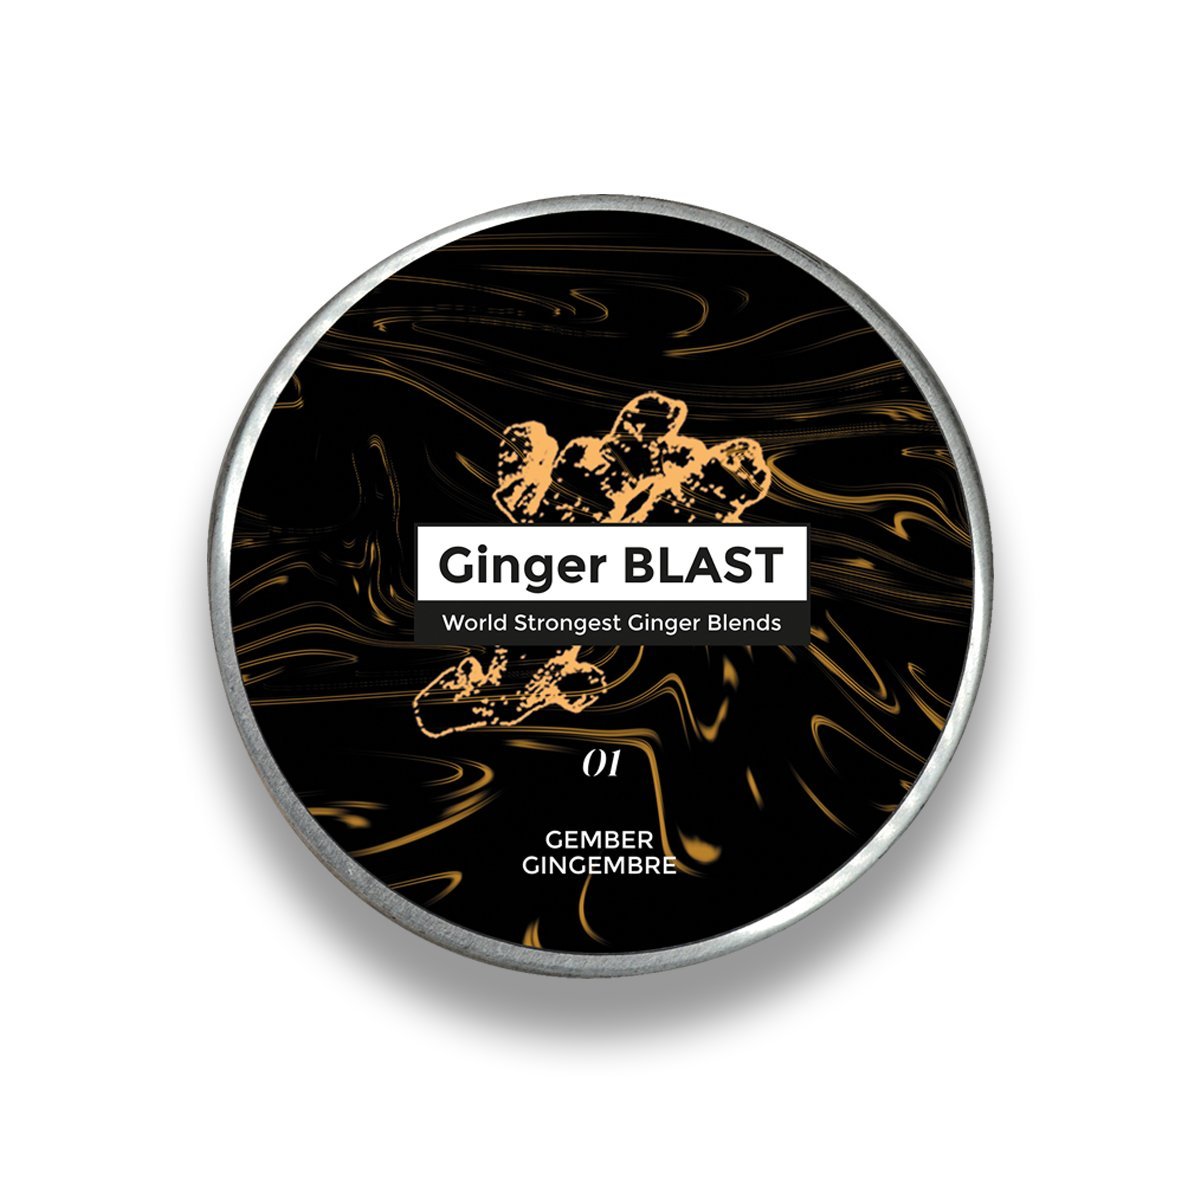 Ginger BLAST 01 Gember